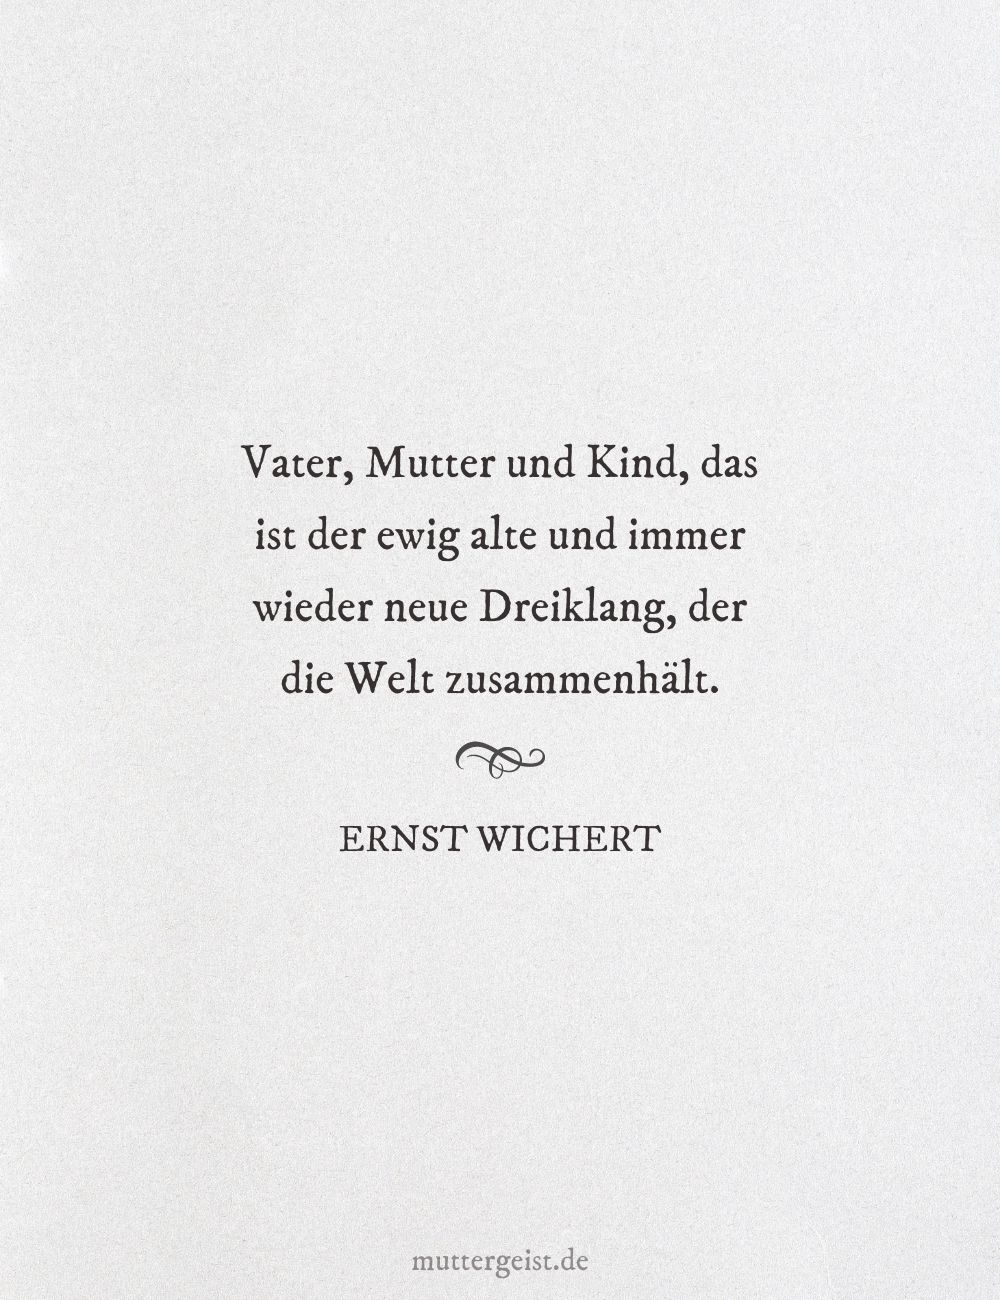 Zitat von Ernst Wichert über die Familie, die die Welt zusammenhält